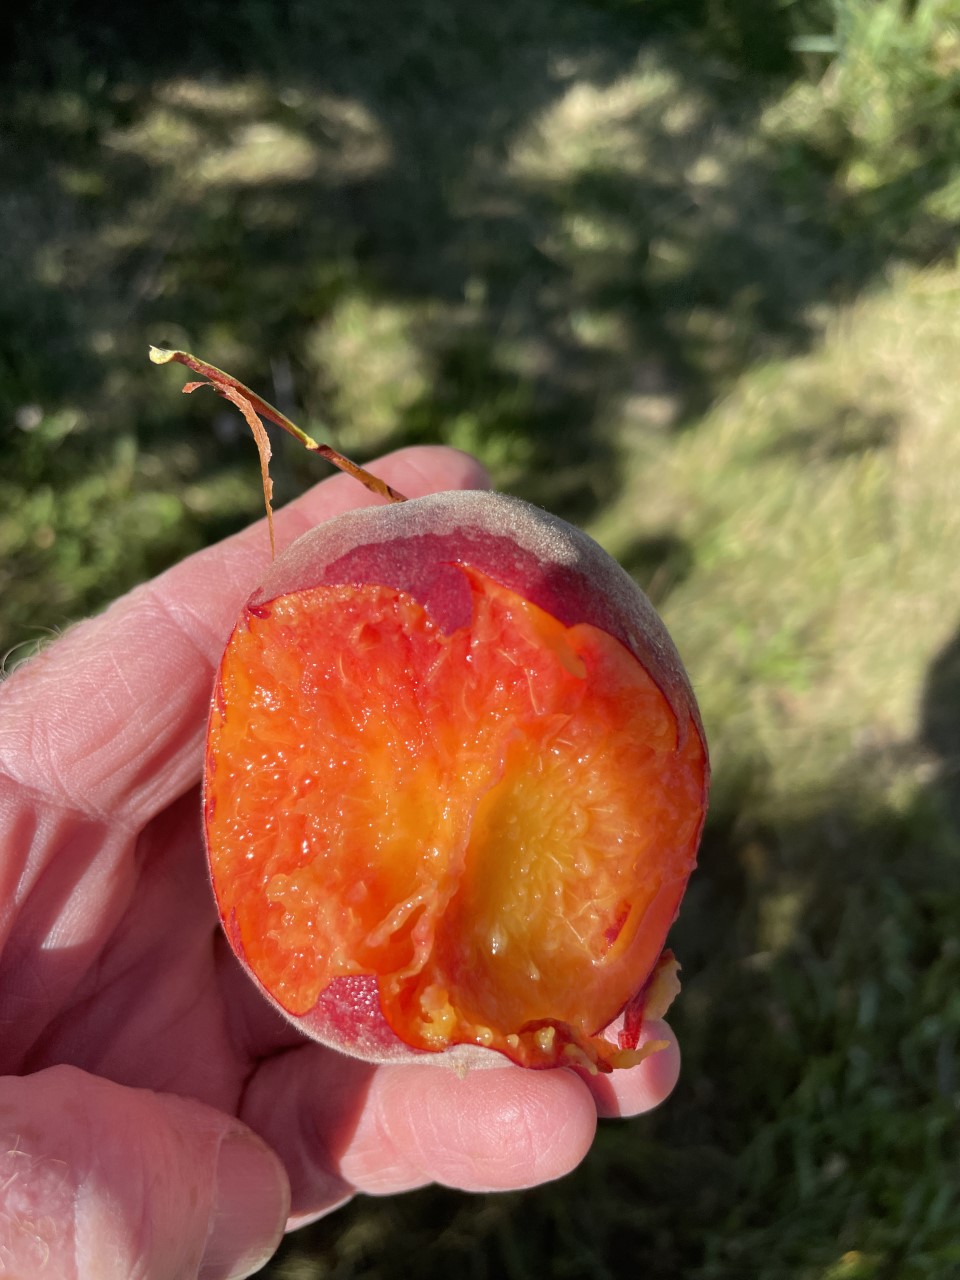 Red flesh in peach.